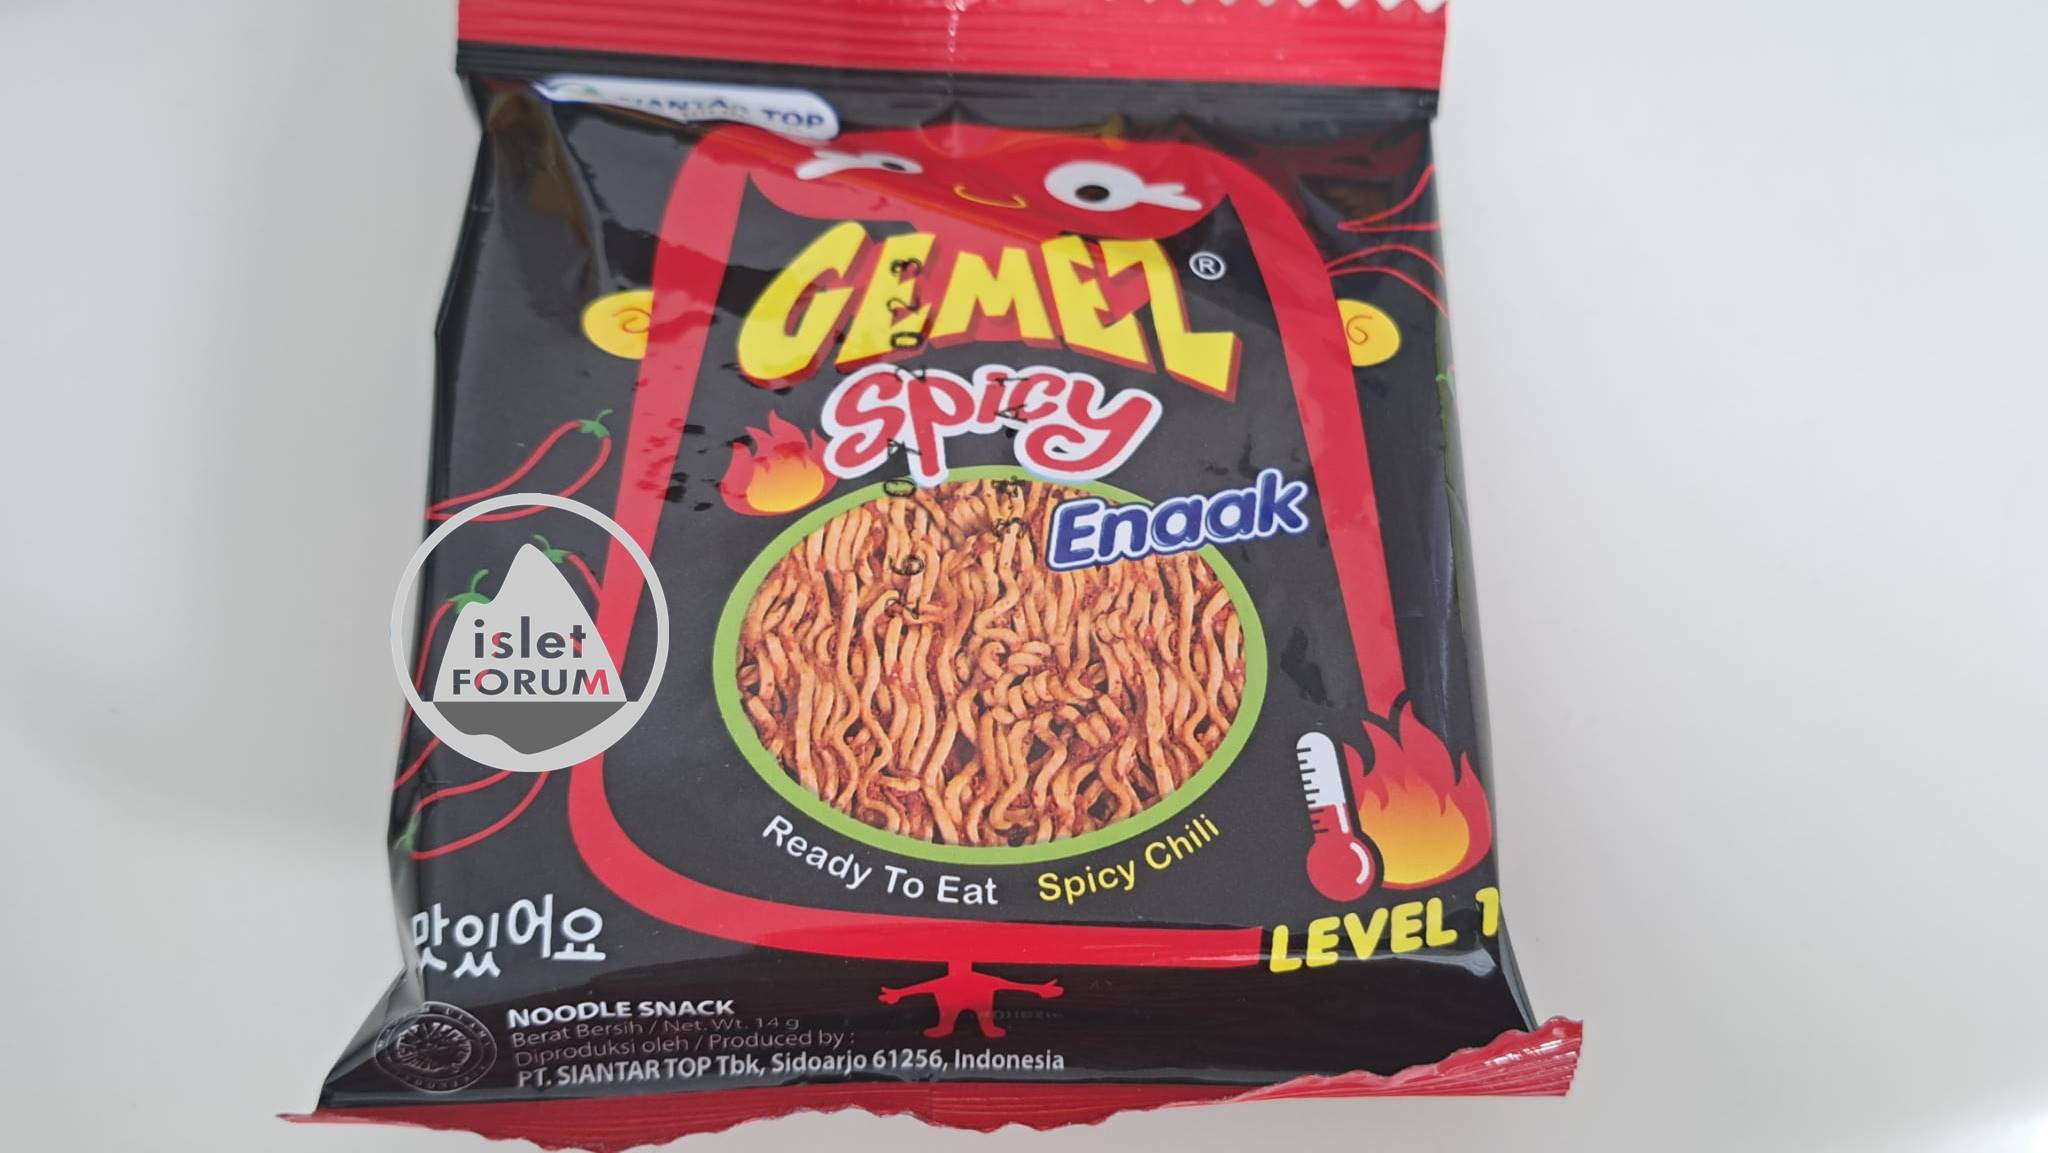 印尼Noodle Snack Gemez Spicy Enaak Ready to eat  Spicy level 1 HK＄3／包 (2).jpeg